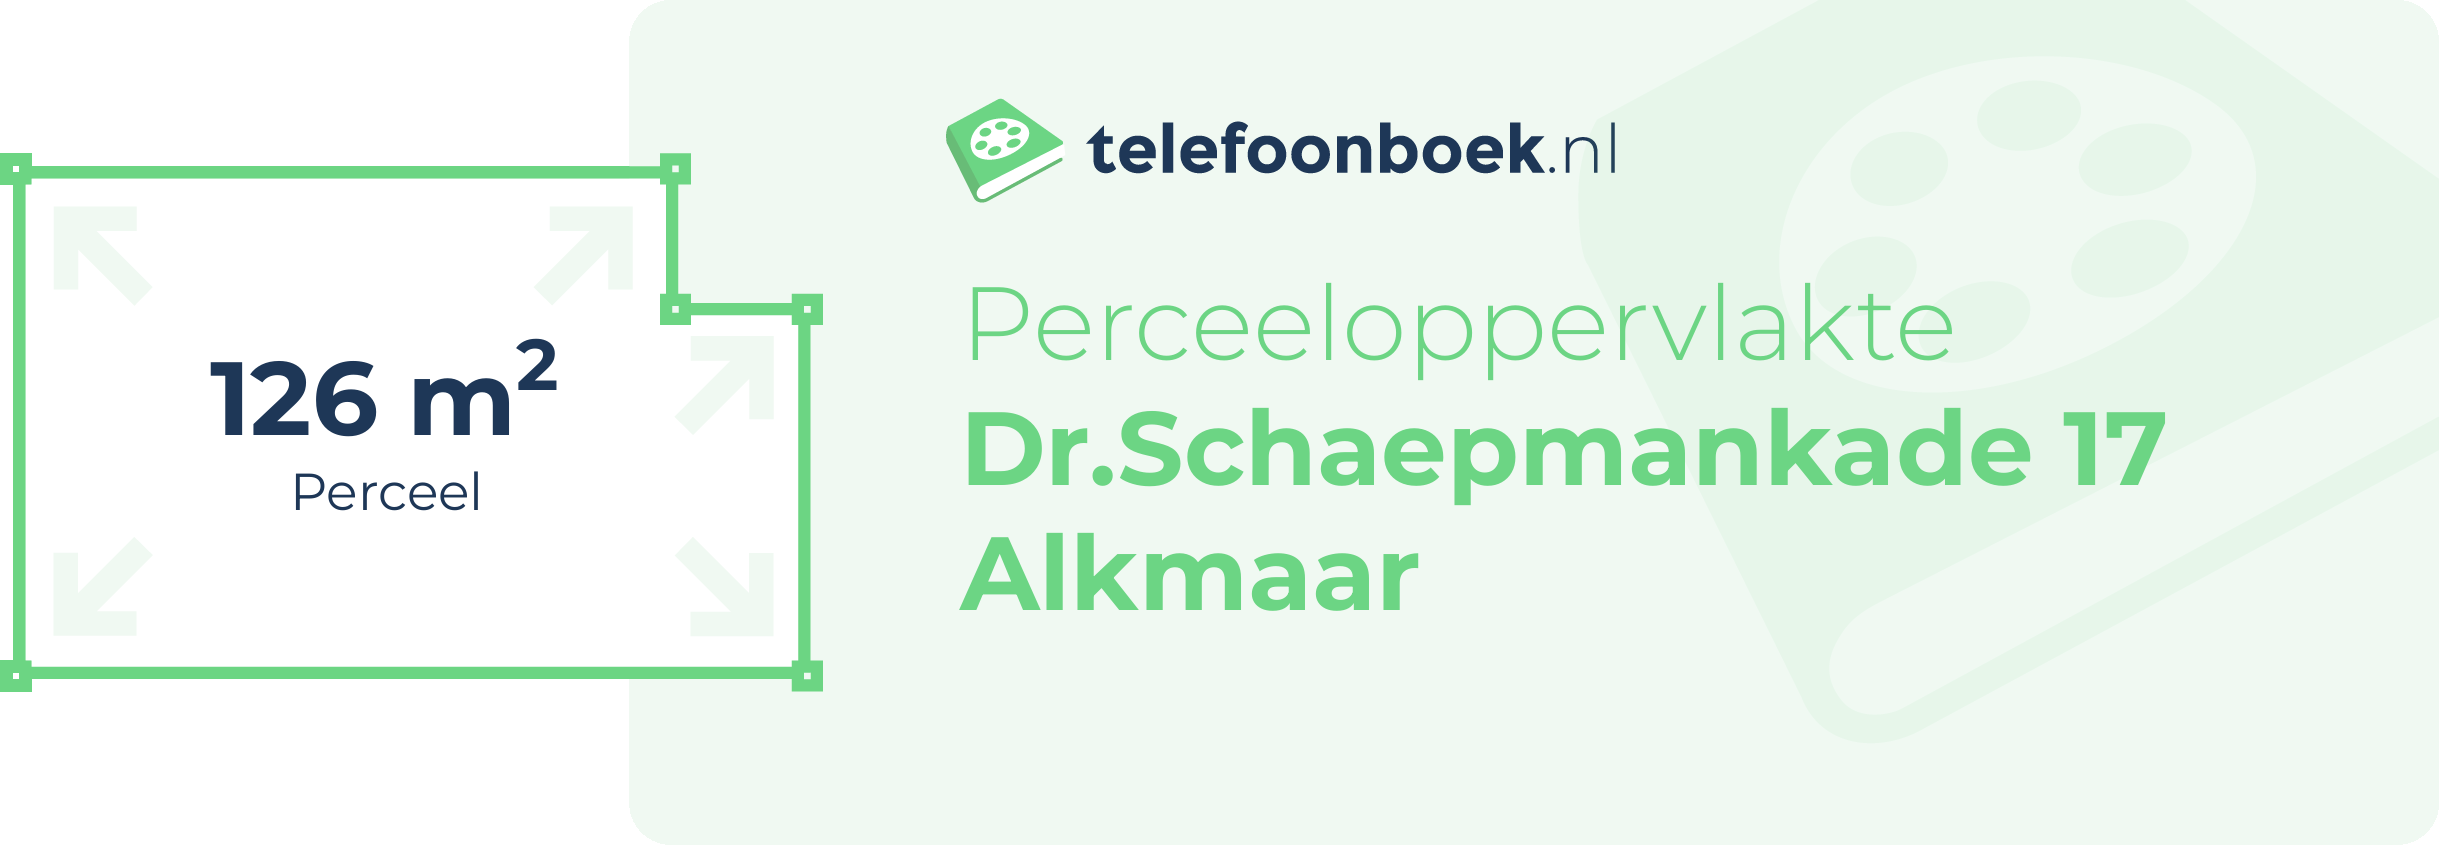 Perceeloppervlakte Dr.Schaepmankade 17 Alkmaar